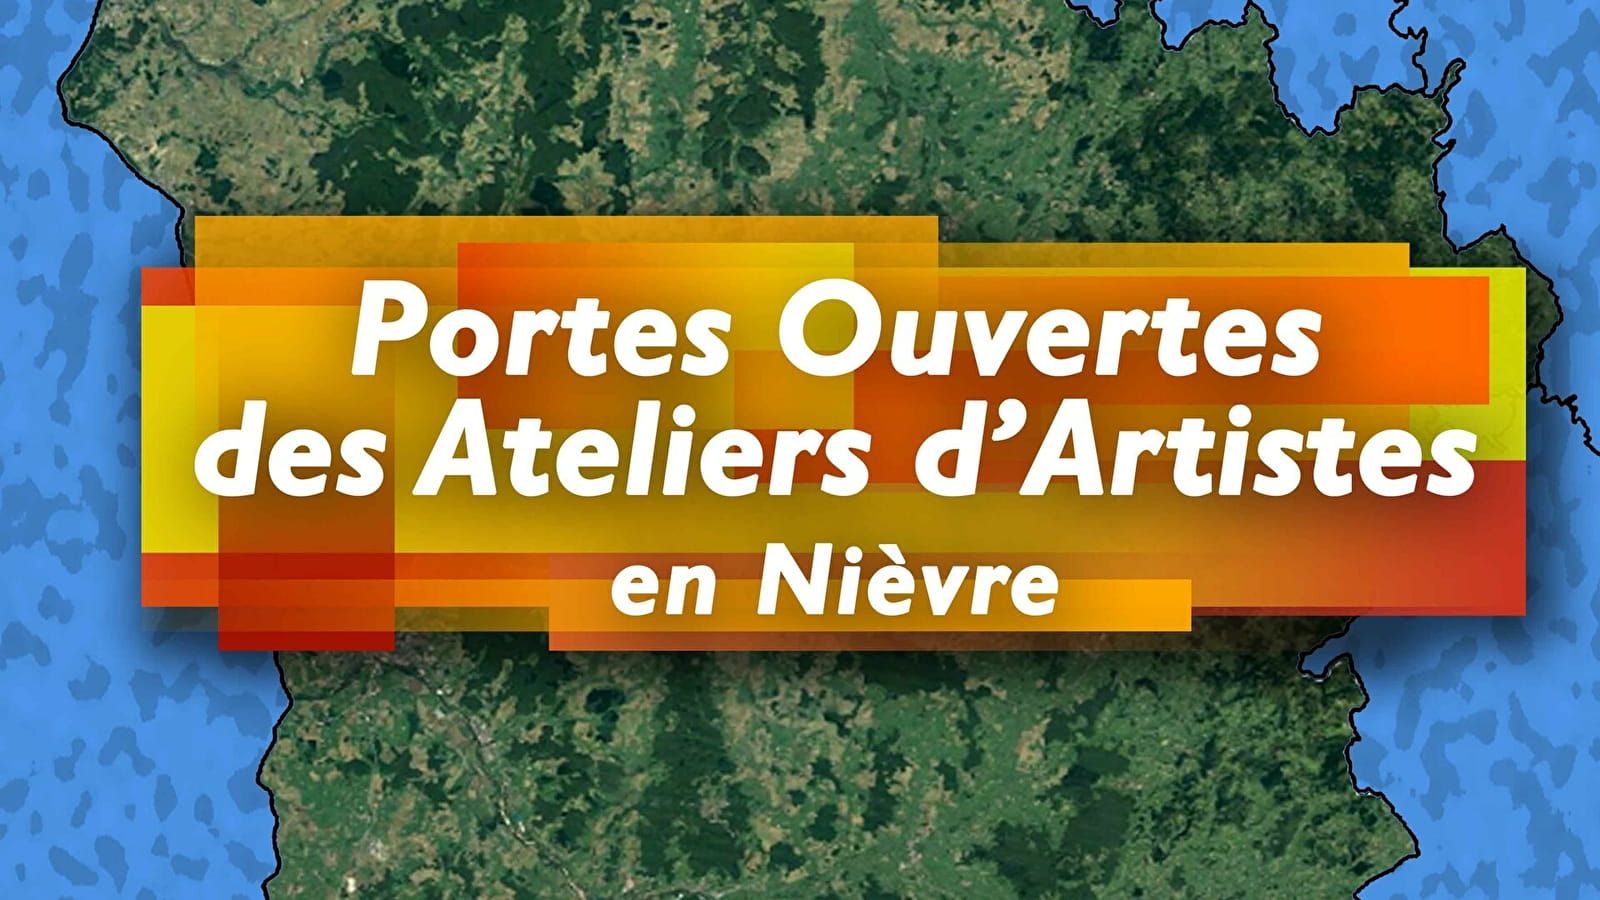 Portes ouvertes des ateliers d'artistes en Nièvre